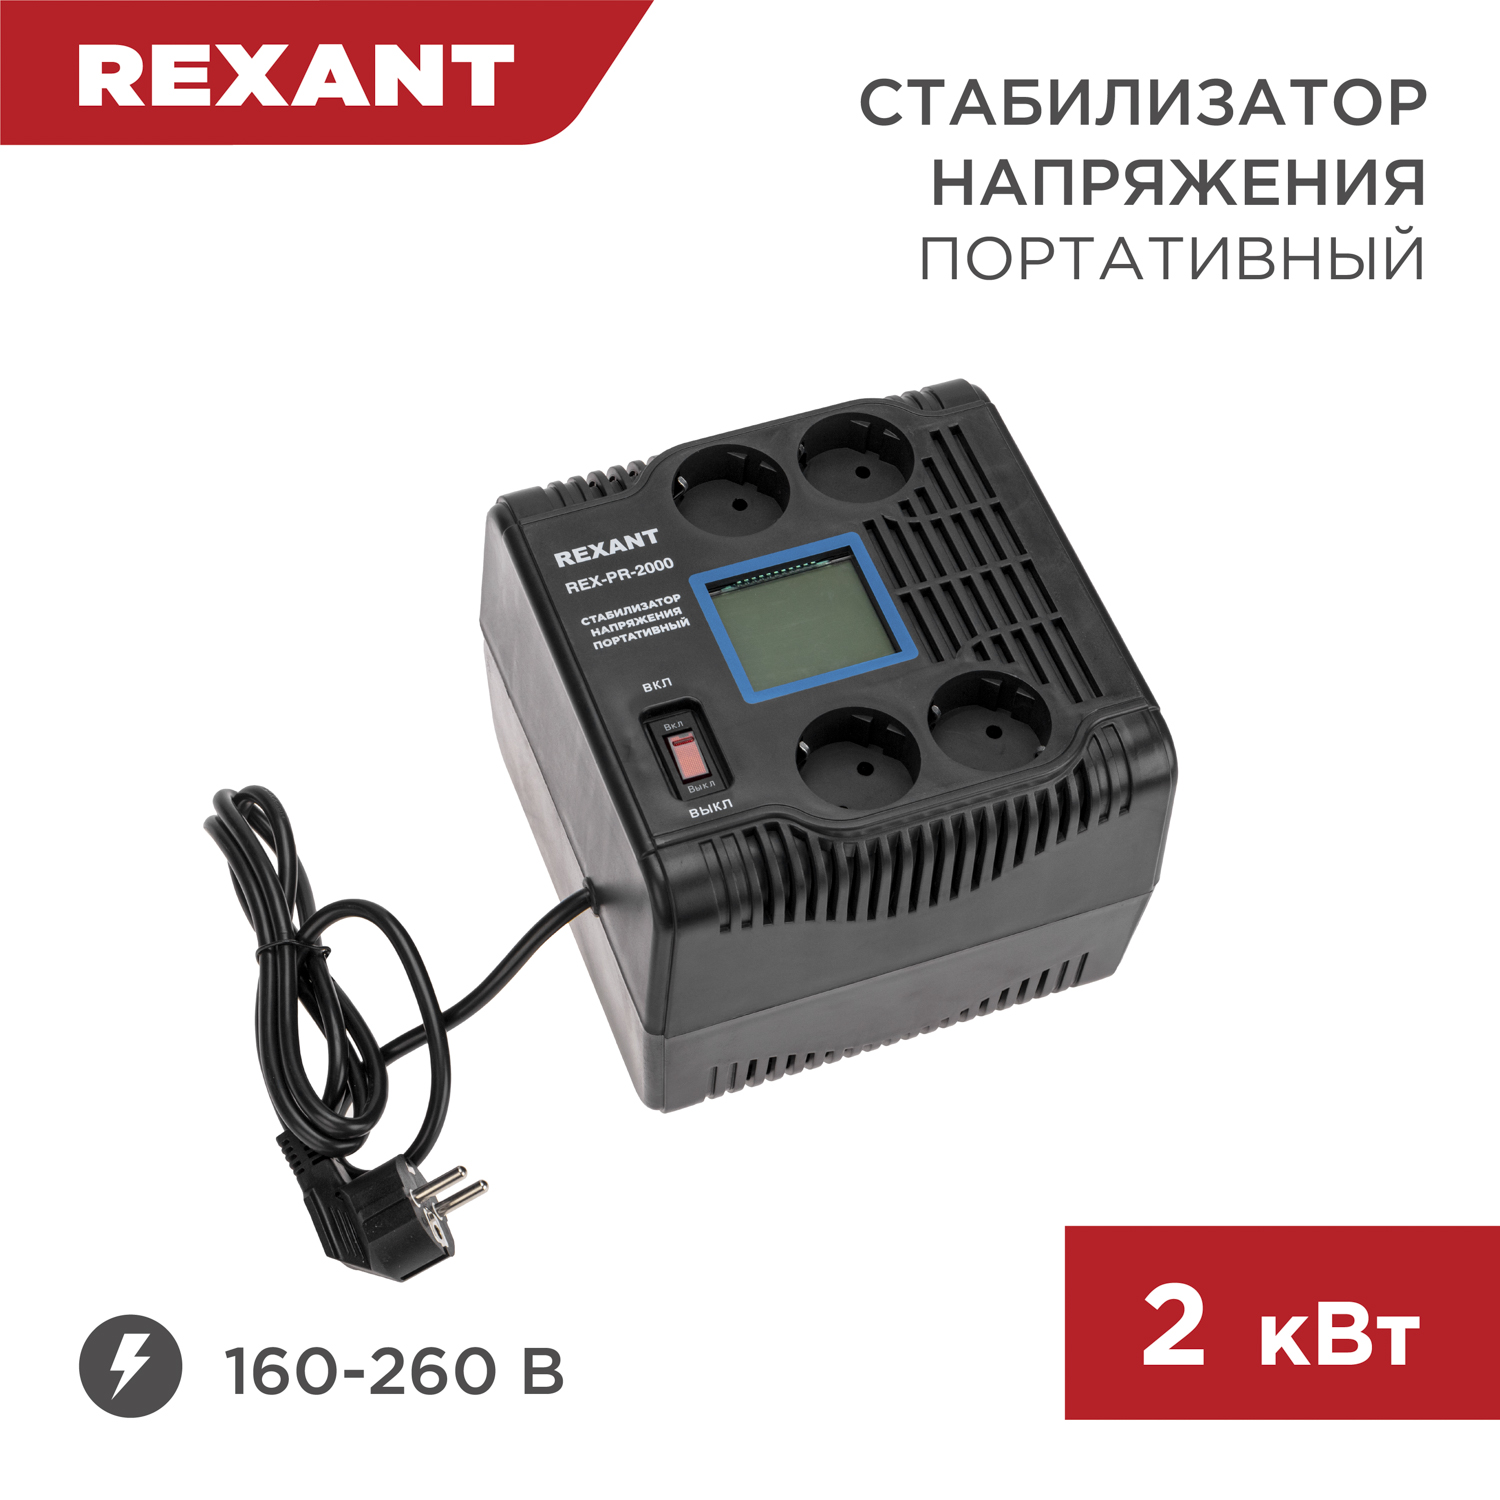 Стабилизатор напряжения портативный REXANT REX-PR-2000 11-5032 портативный индикатор напряжения uni t